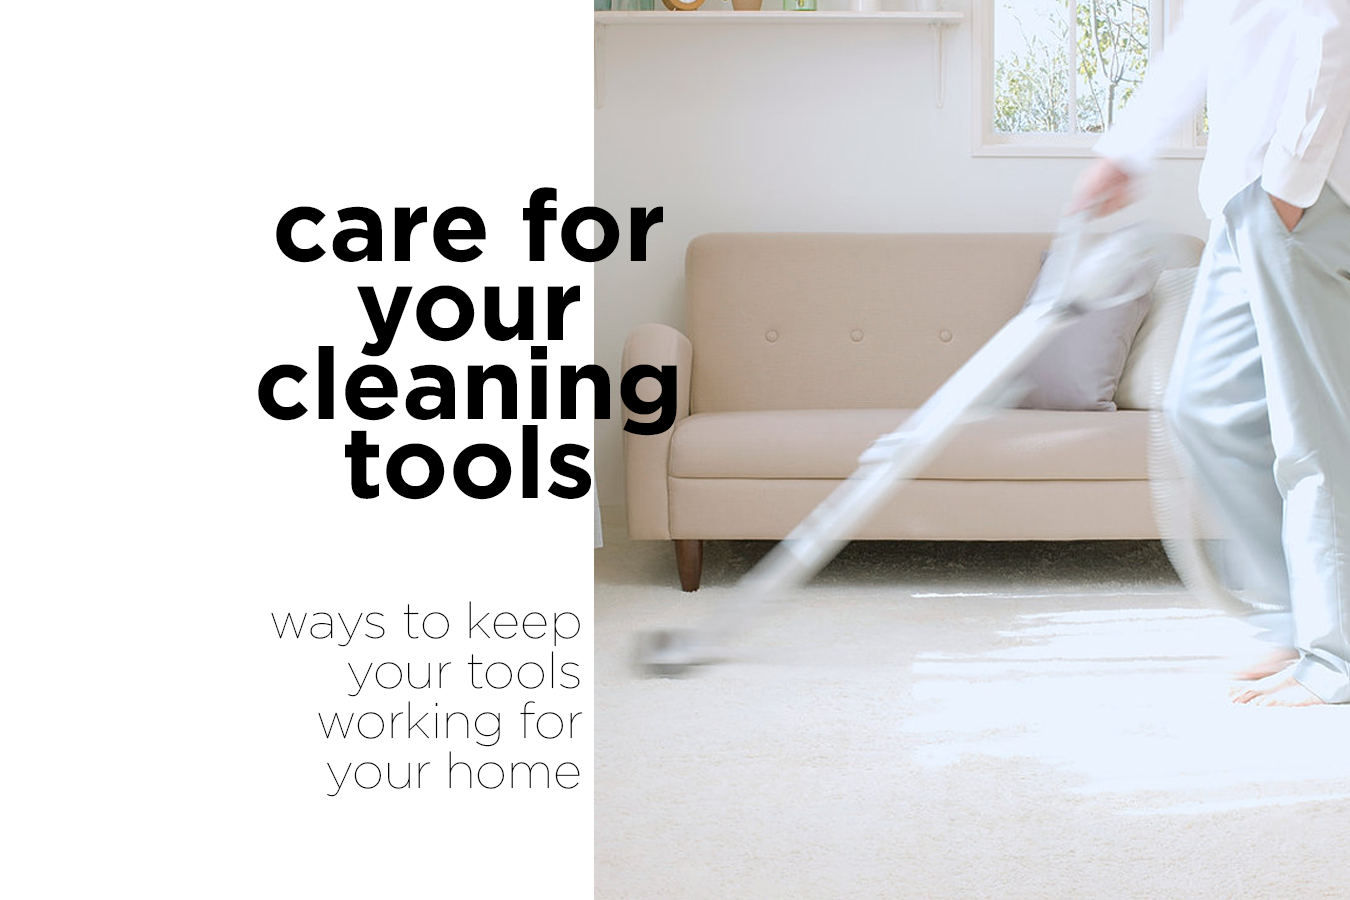 Cuide sus herramientas de limpieza